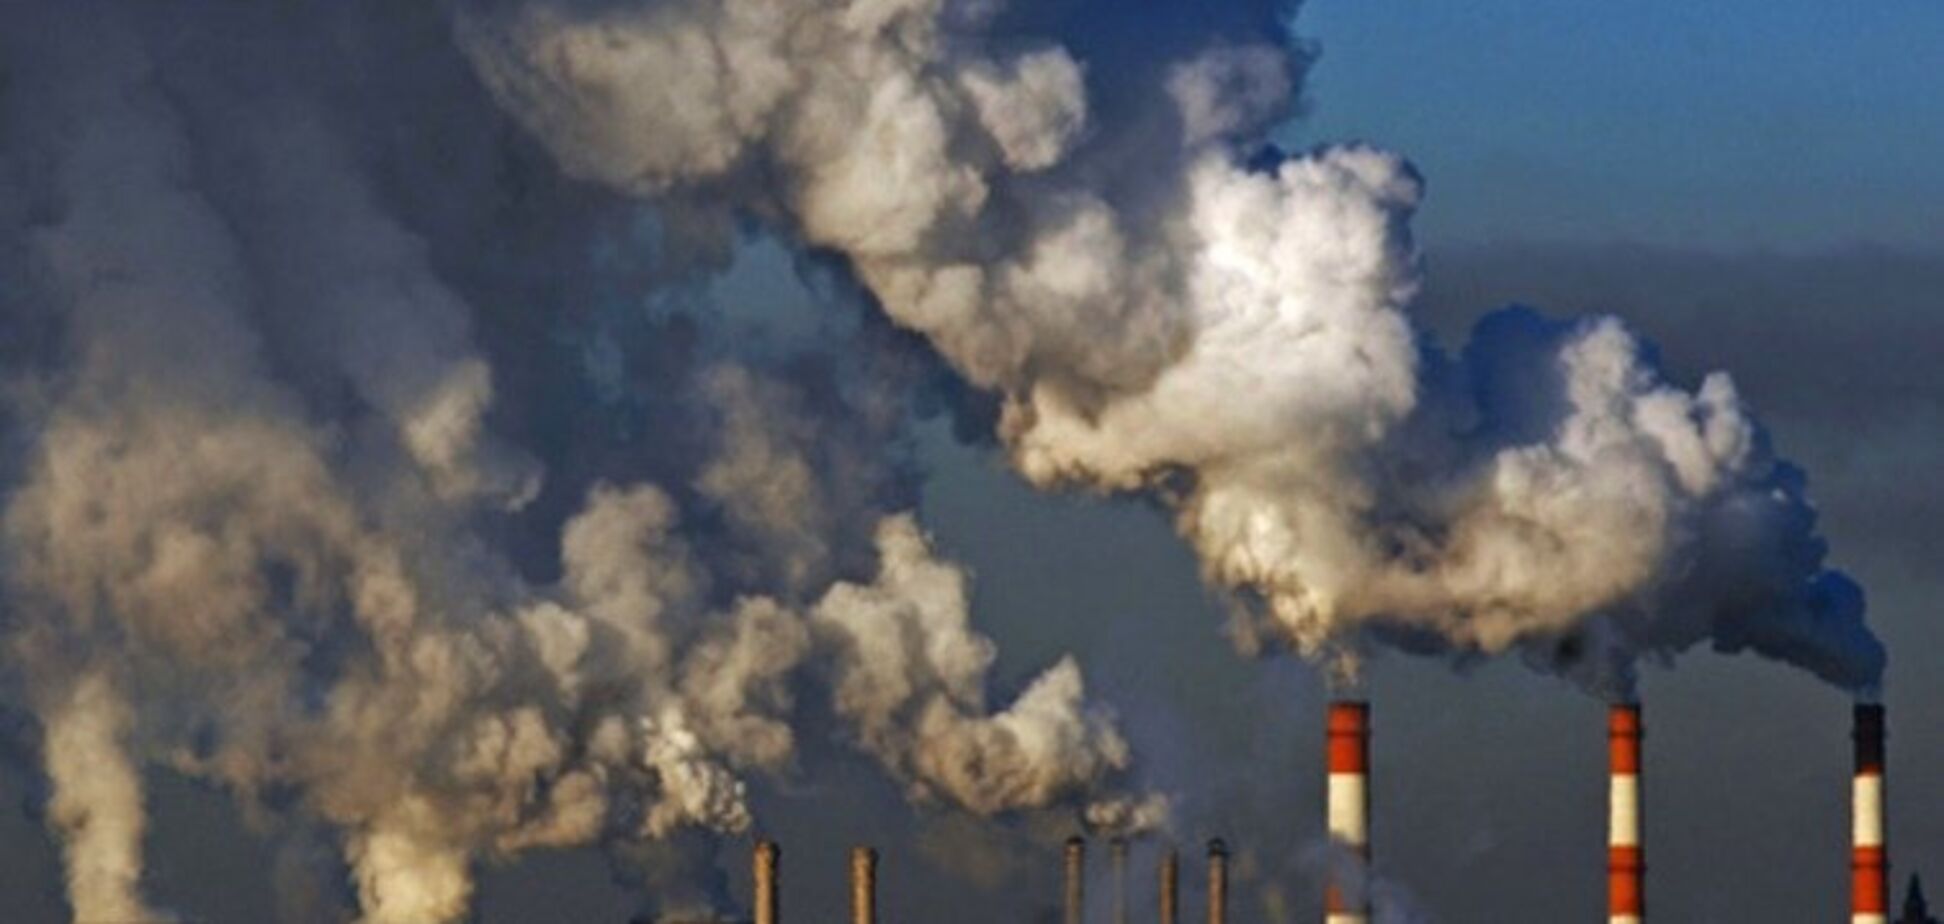 'Защищает все интересы': эколог оценил новый закон Минекоенерго о промышленных загрязнениях